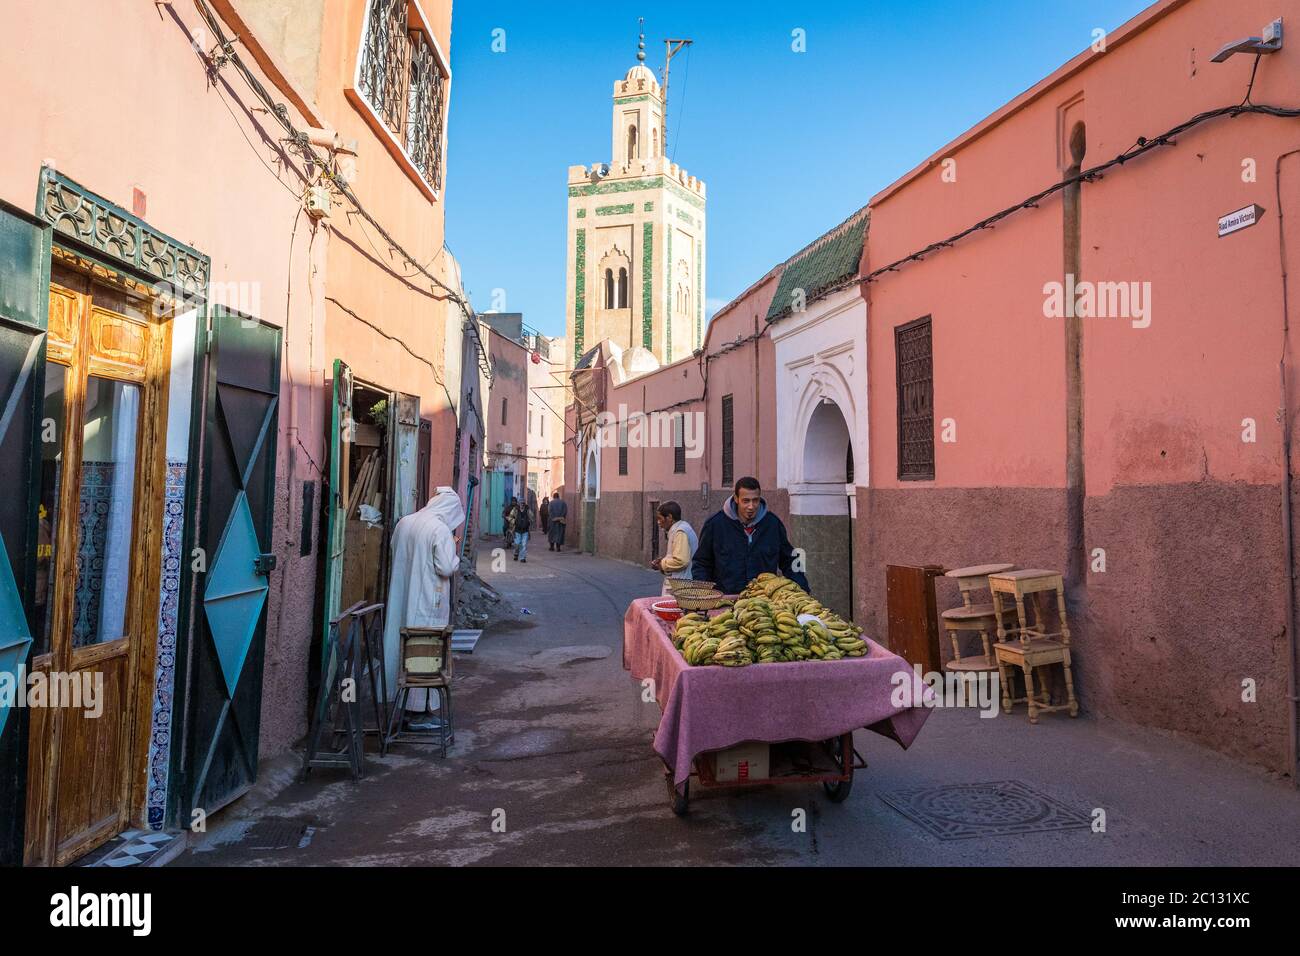 Uomo con un carrello di trasporto o un carrello di vendita di banane, scena di strada nella città vecchia, la Medina, Marrakech, Marocco, Africa Foto Stock